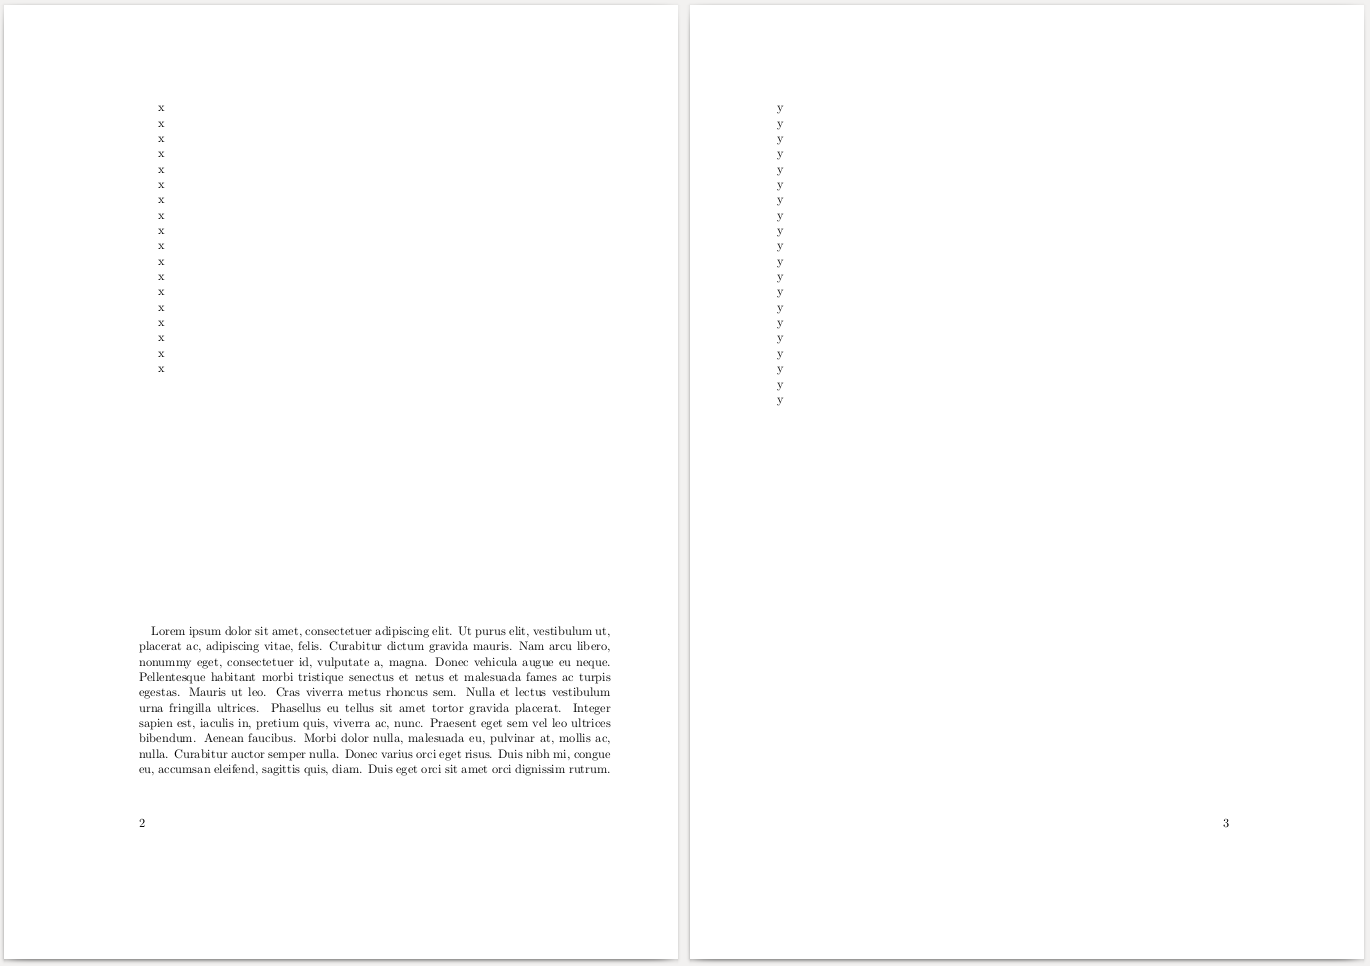 Seiten 2 und 3 des mit pdflatex Version 3.14159265-2.6-1.40.18 generierten PDFs.